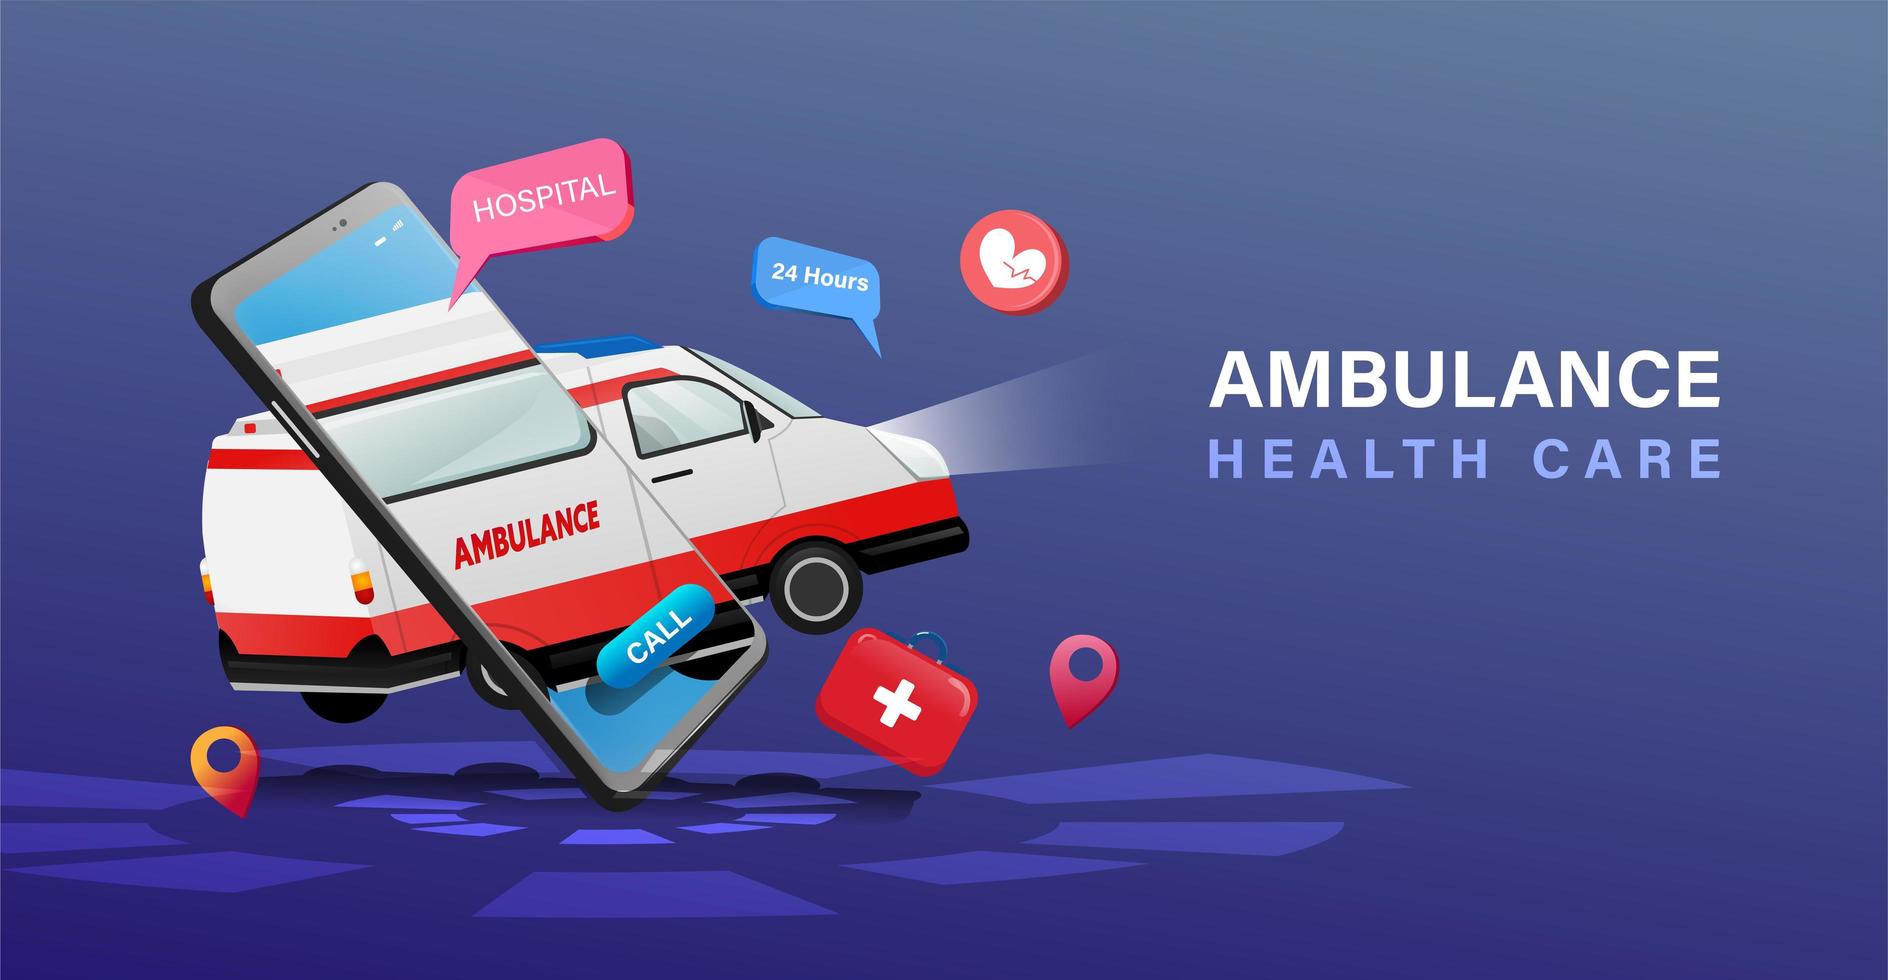 ambulance flottante et affiche de soins de santé de téléphone portable vecteur